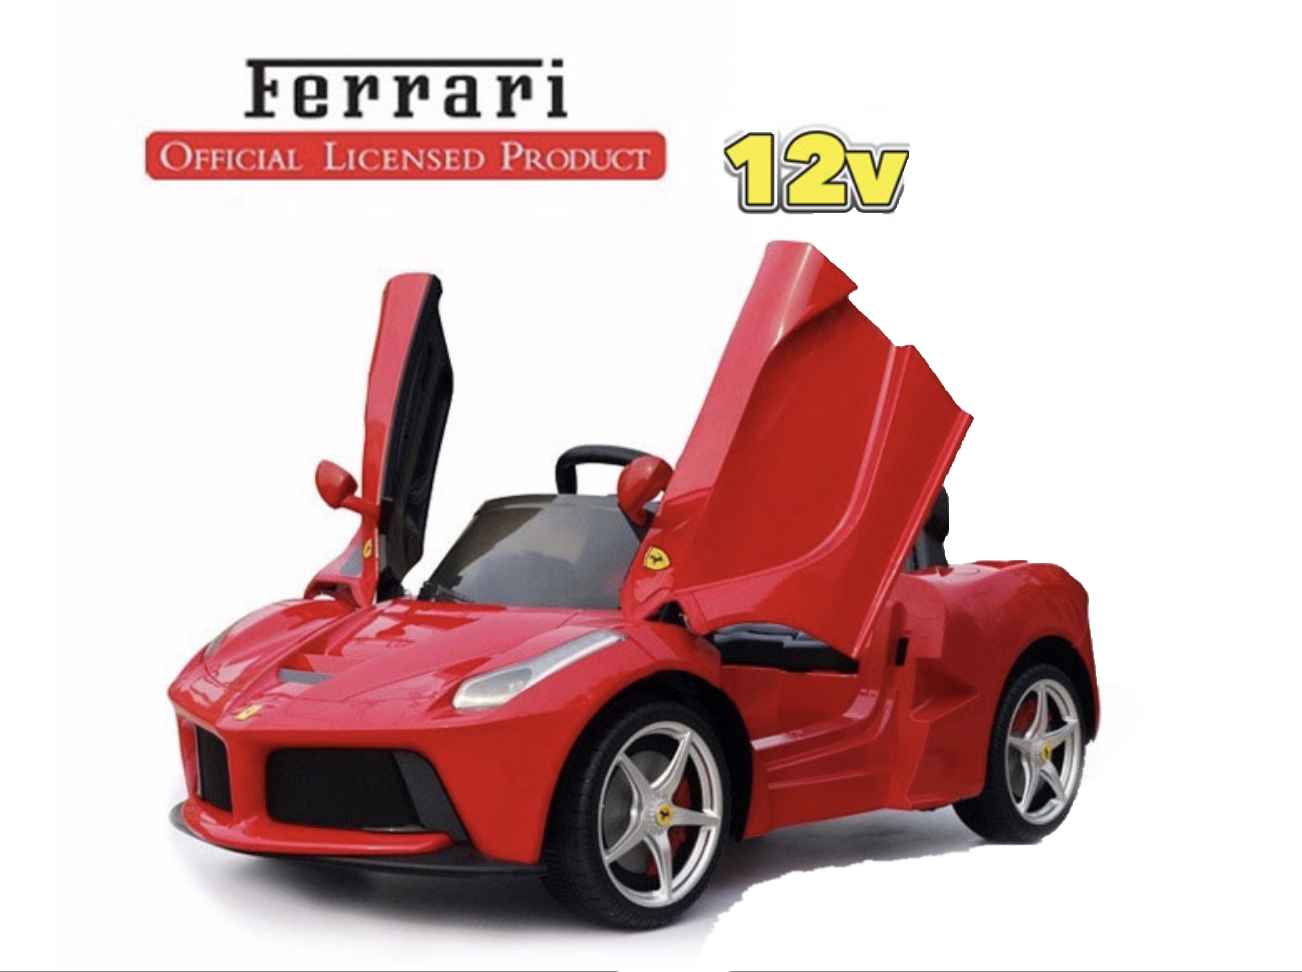 La Ferrari 12V